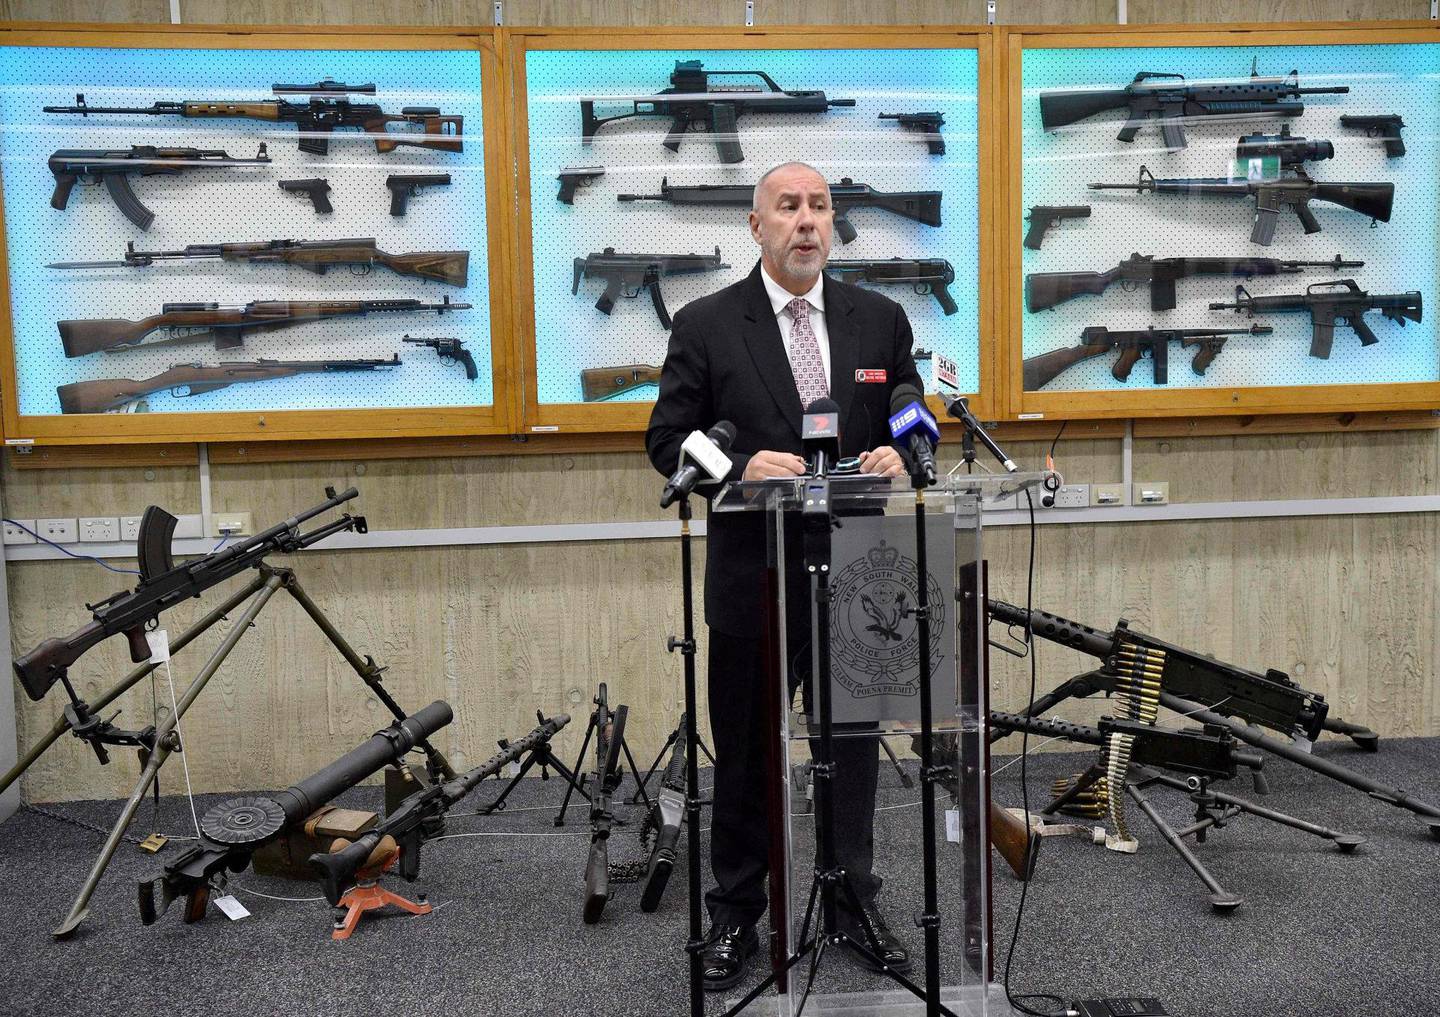 SAMLET INN VÅPEN: Også Australia har endret lovene og samlet inn våpen. Dette bildet fra 2017 viser Wayne Hoffman fra Sydney-politiet med innsamlede våpen i bakgrunnen. FOTO: NTB SCANPIX